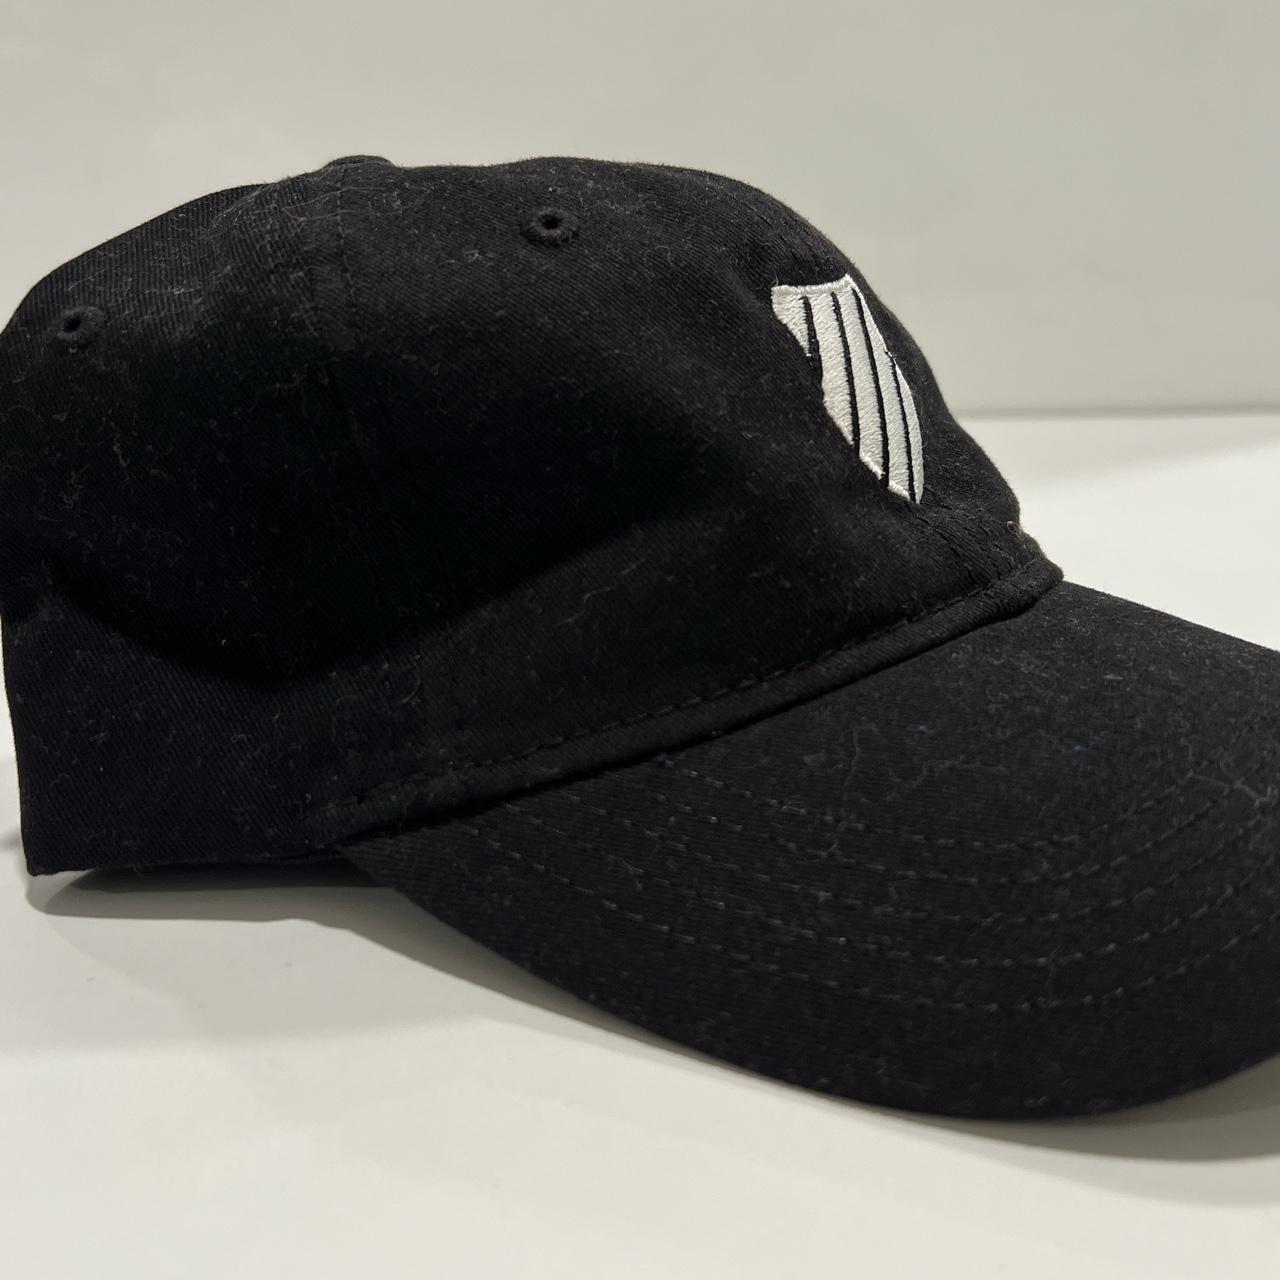 K-Swiss Women's Black and White Hat (4)